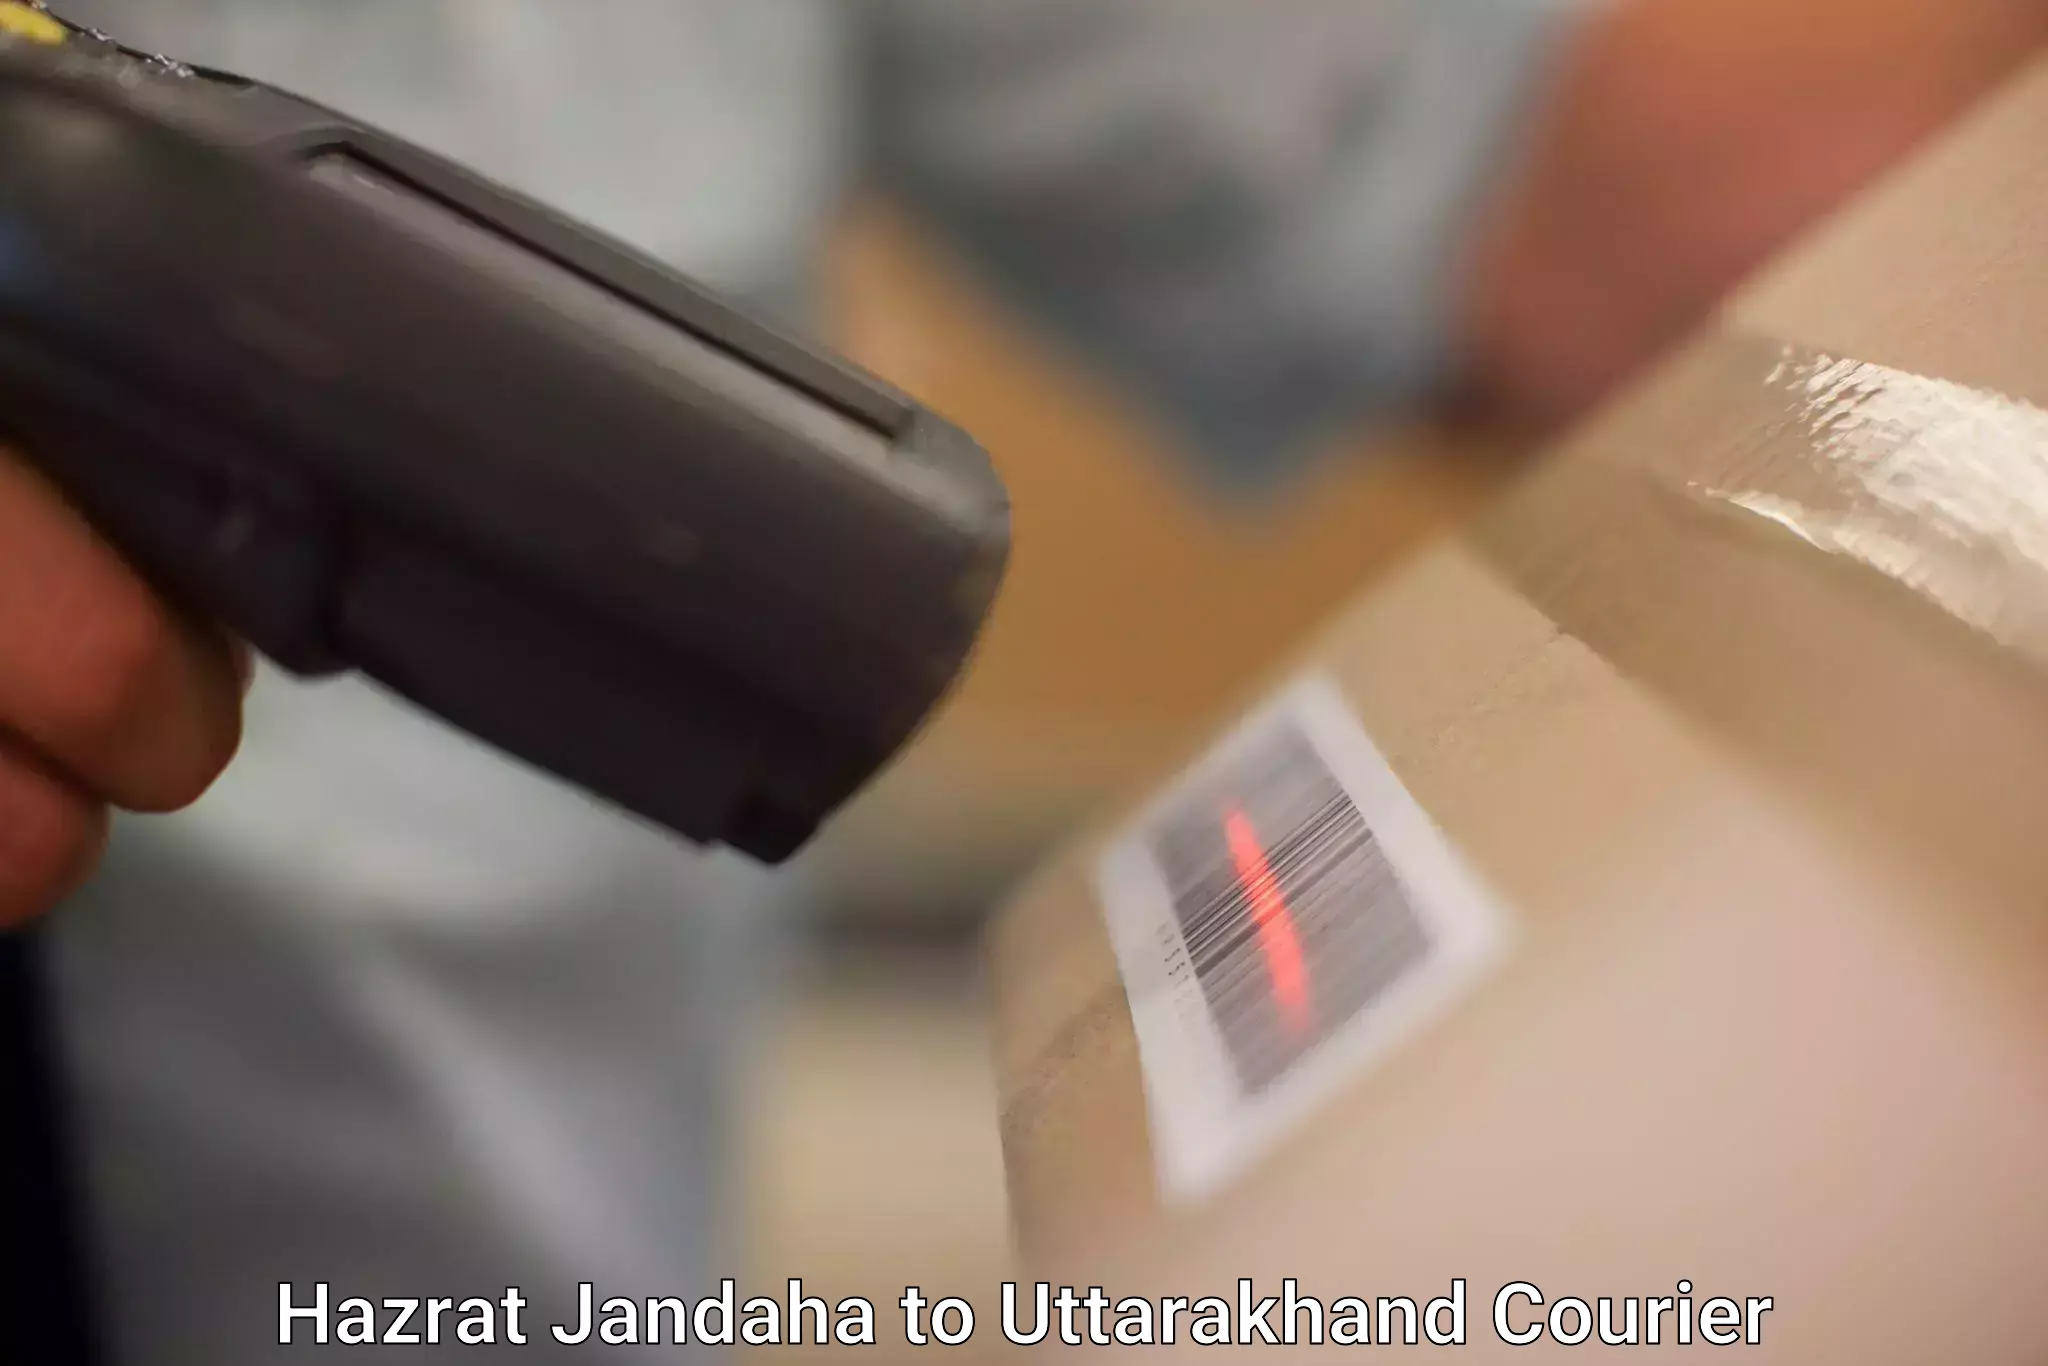 Professional courier handling Hazrat Jandaha to Uttarakhand